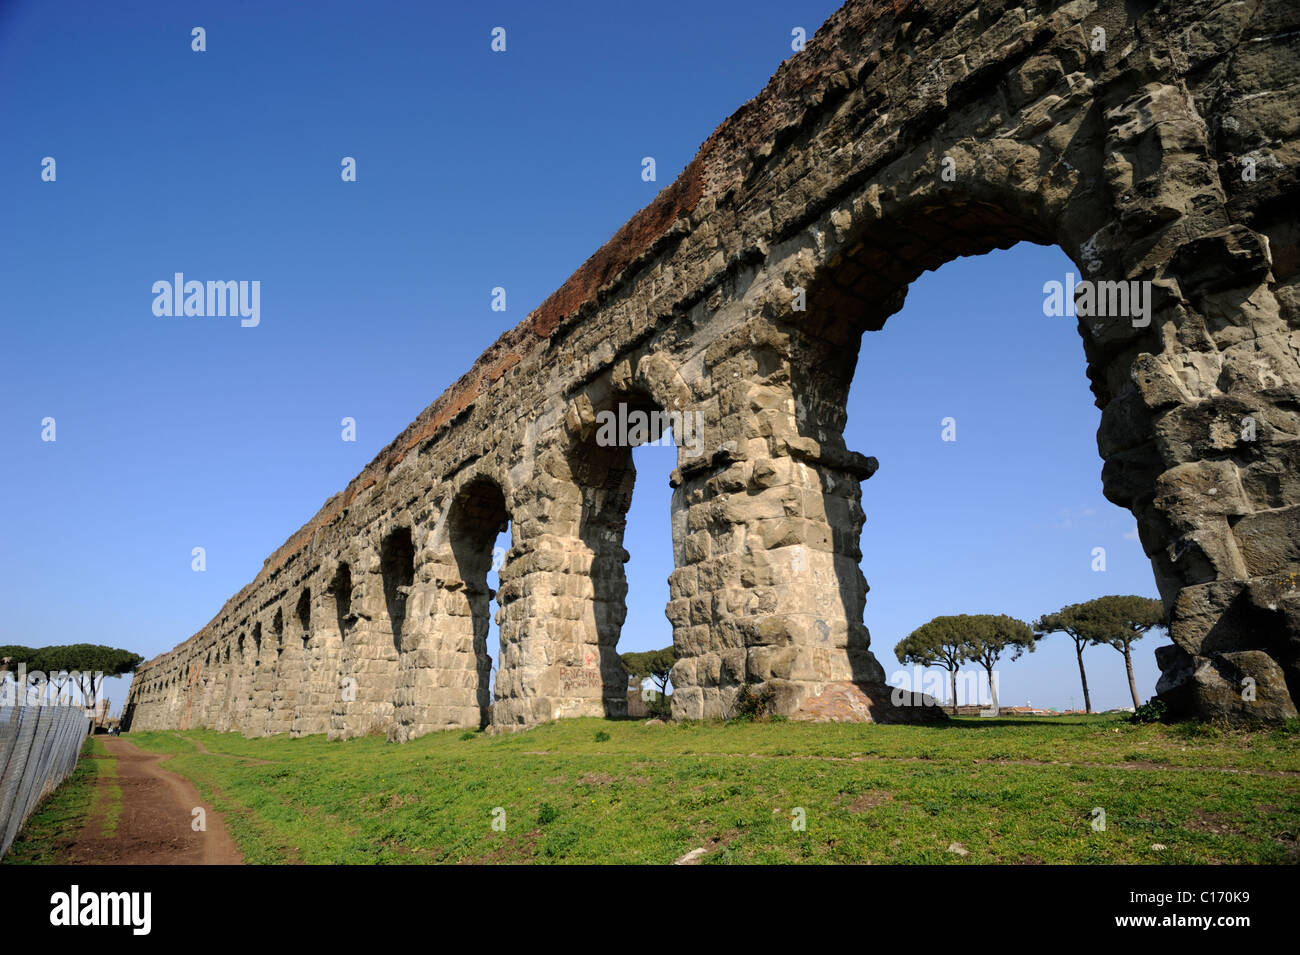 Italy, Rome, ancient roman aqueduct in Parco degli Acquedotti Stock Photo